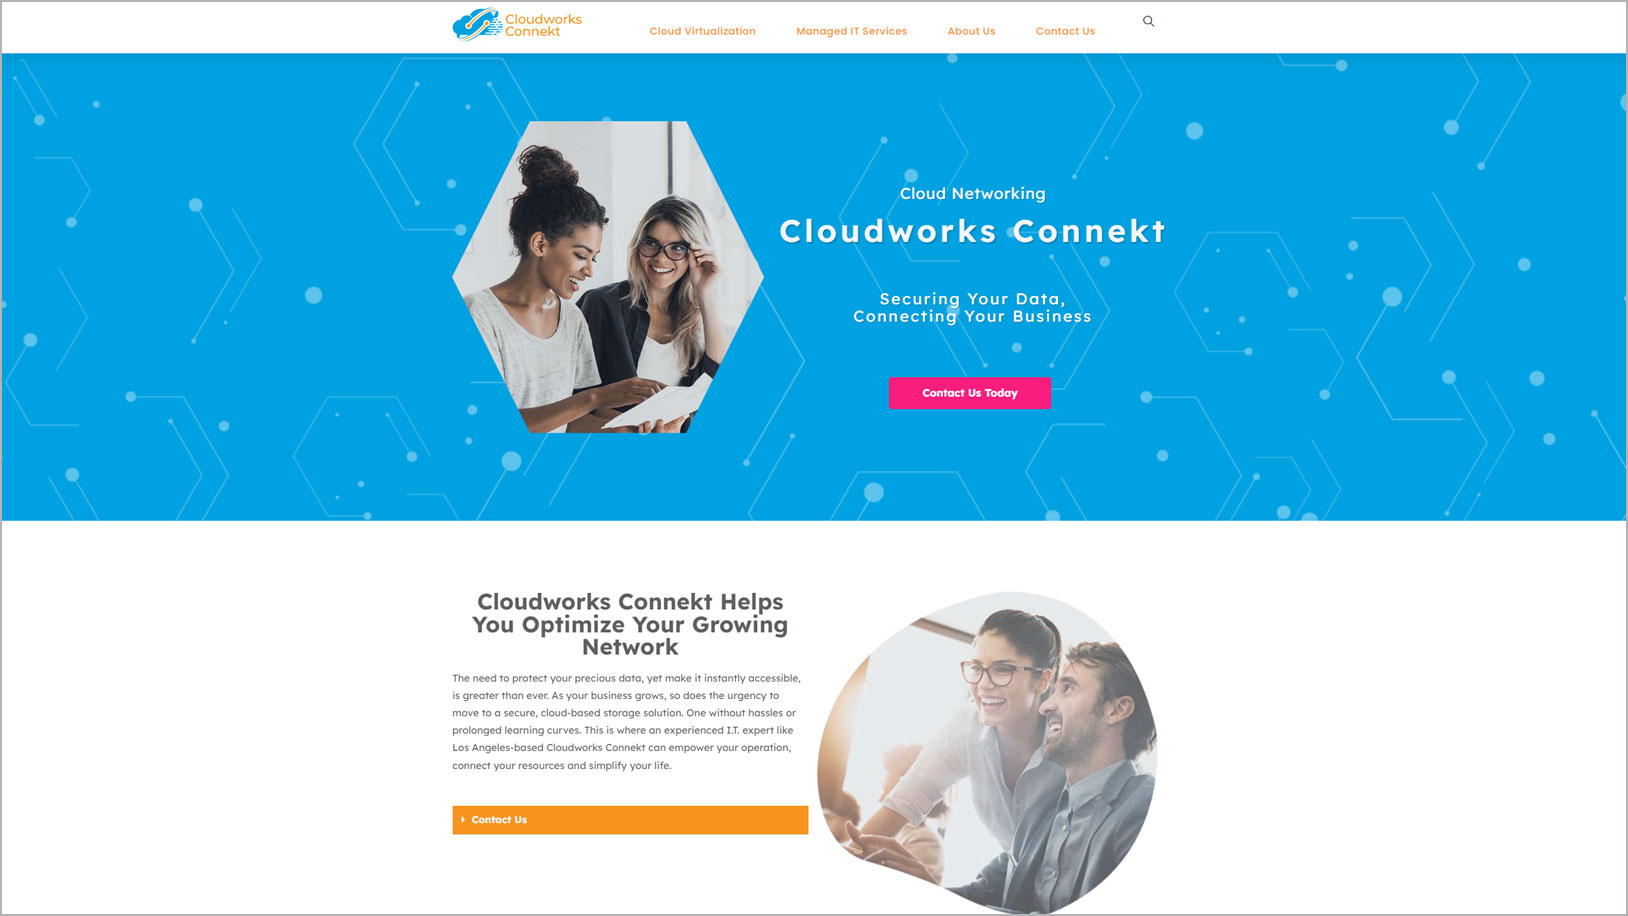 Case Study Cloudworks Connekt